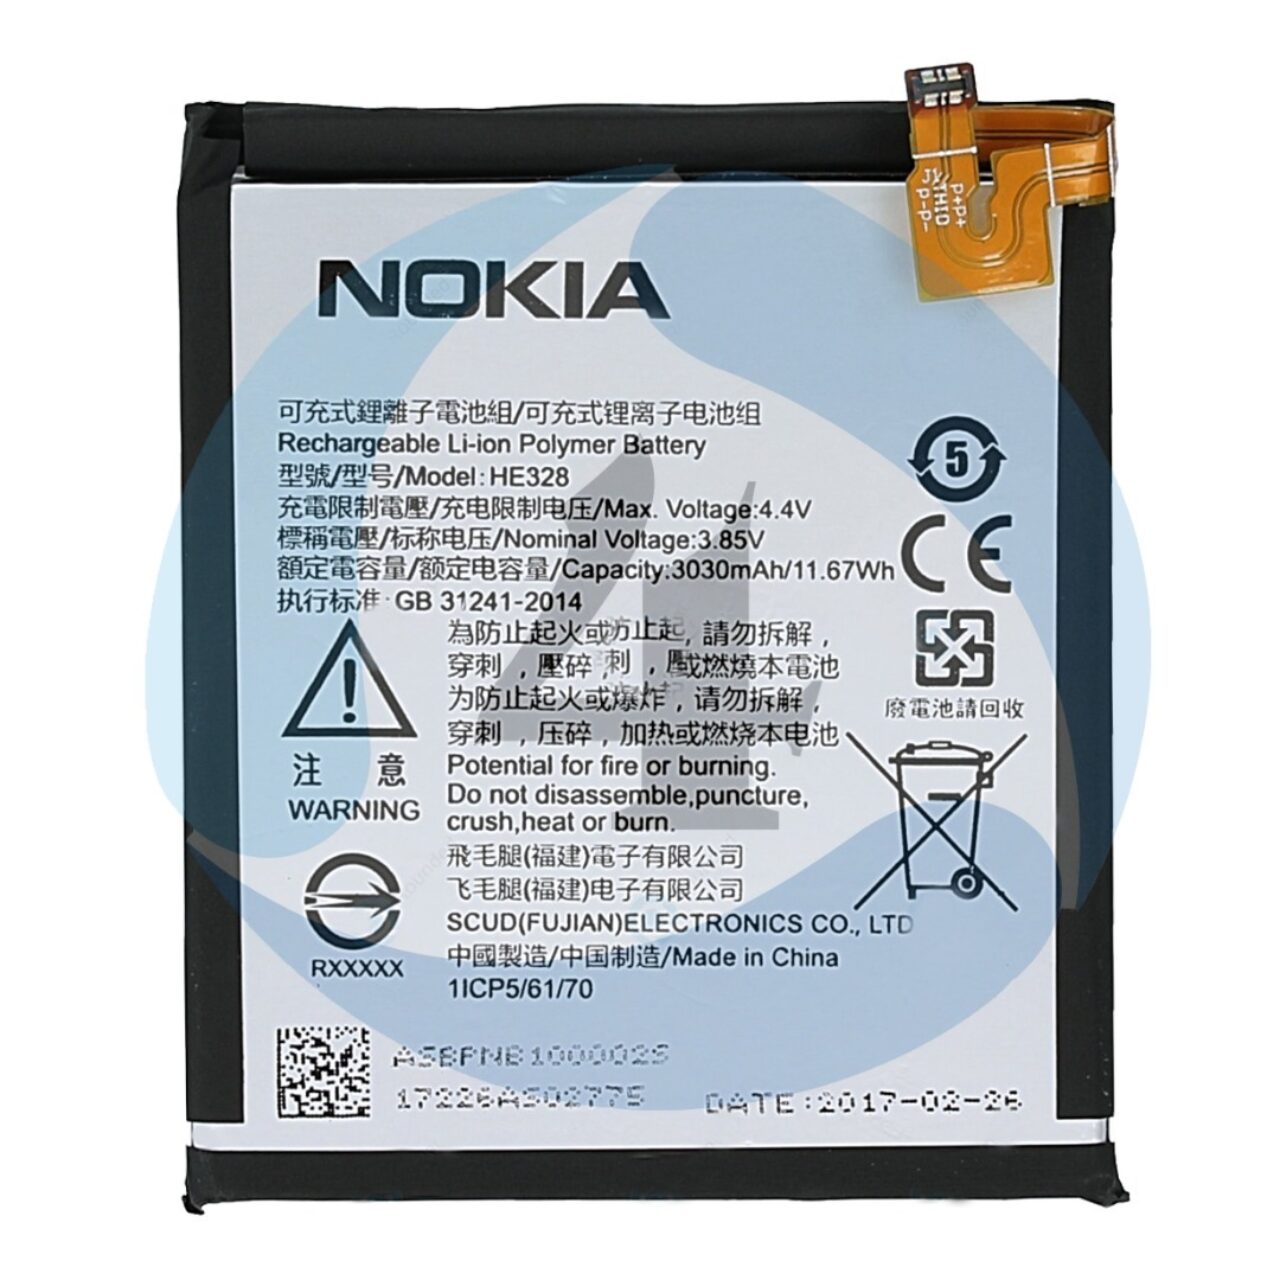 Nokia 8 batterij vervangen reparatie